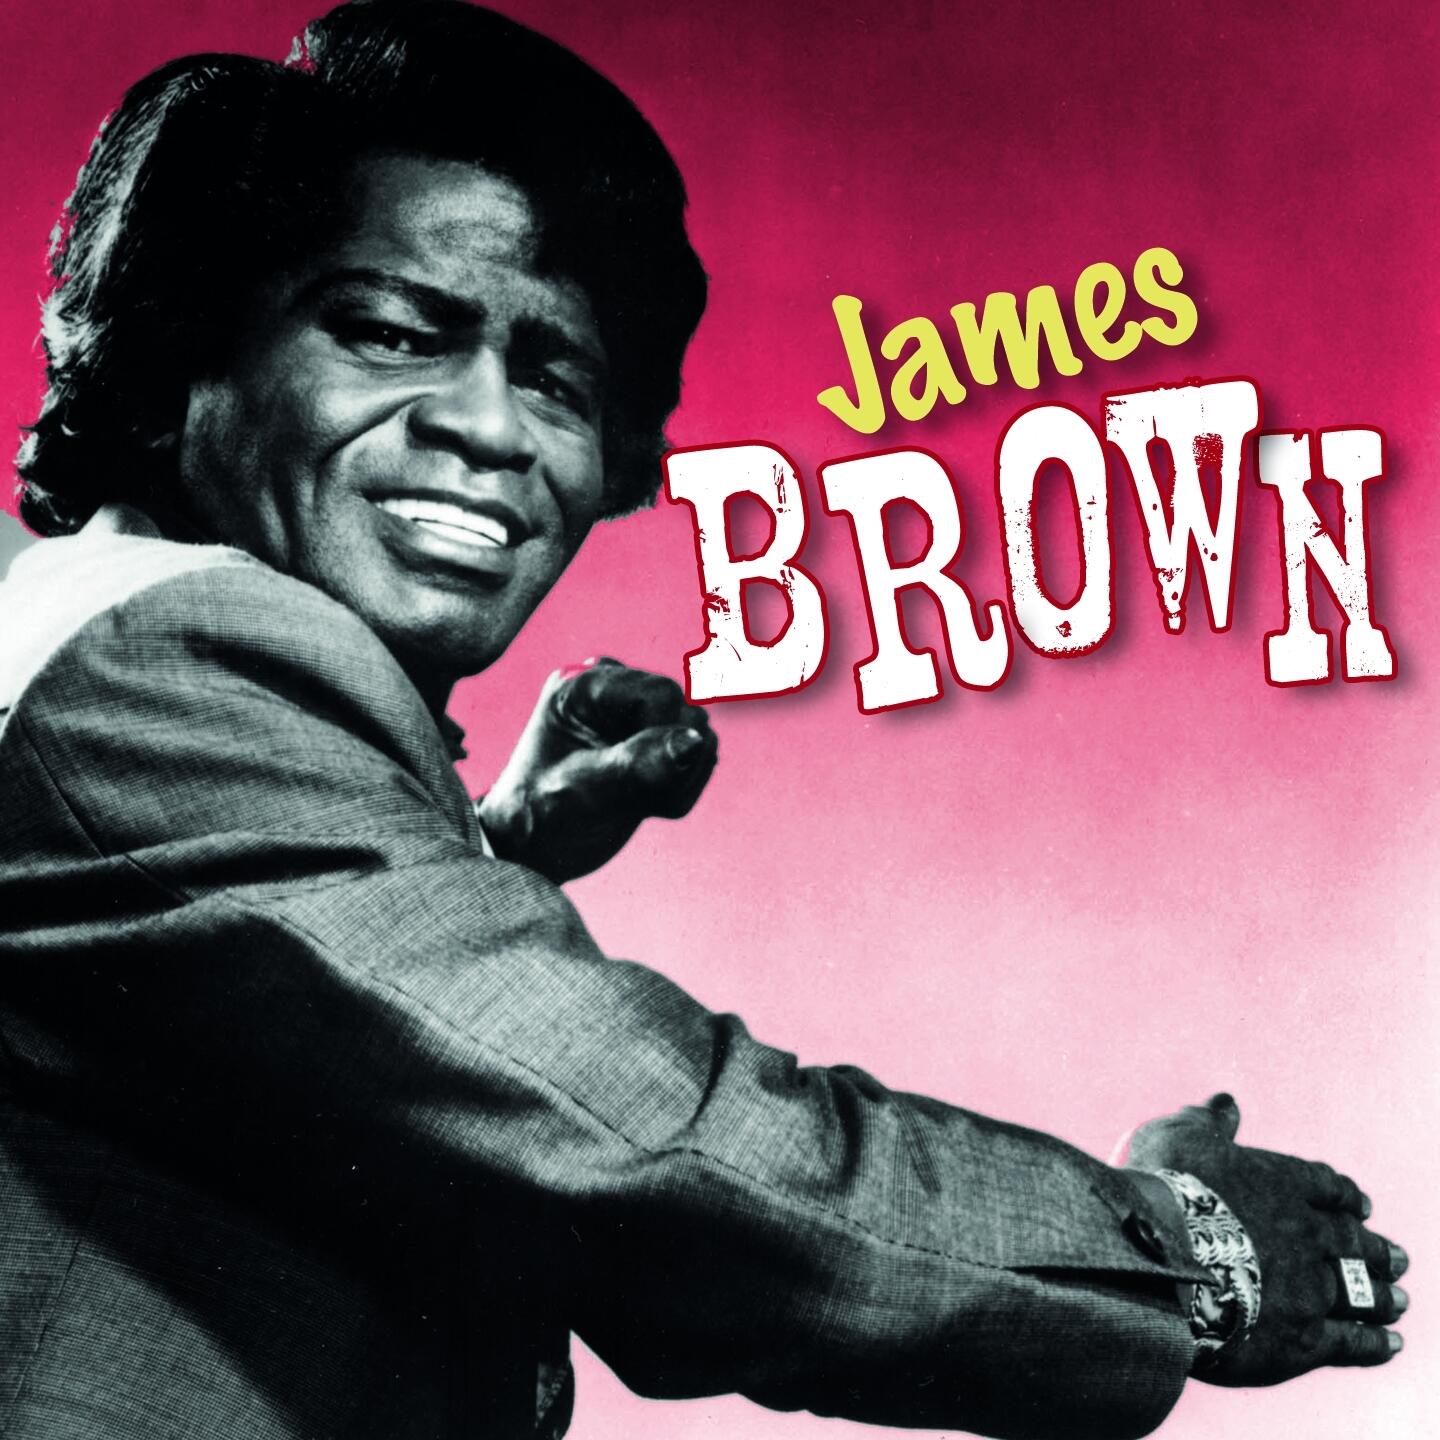 Слушать песни браун. James Brown обложка. James Brown альбом.